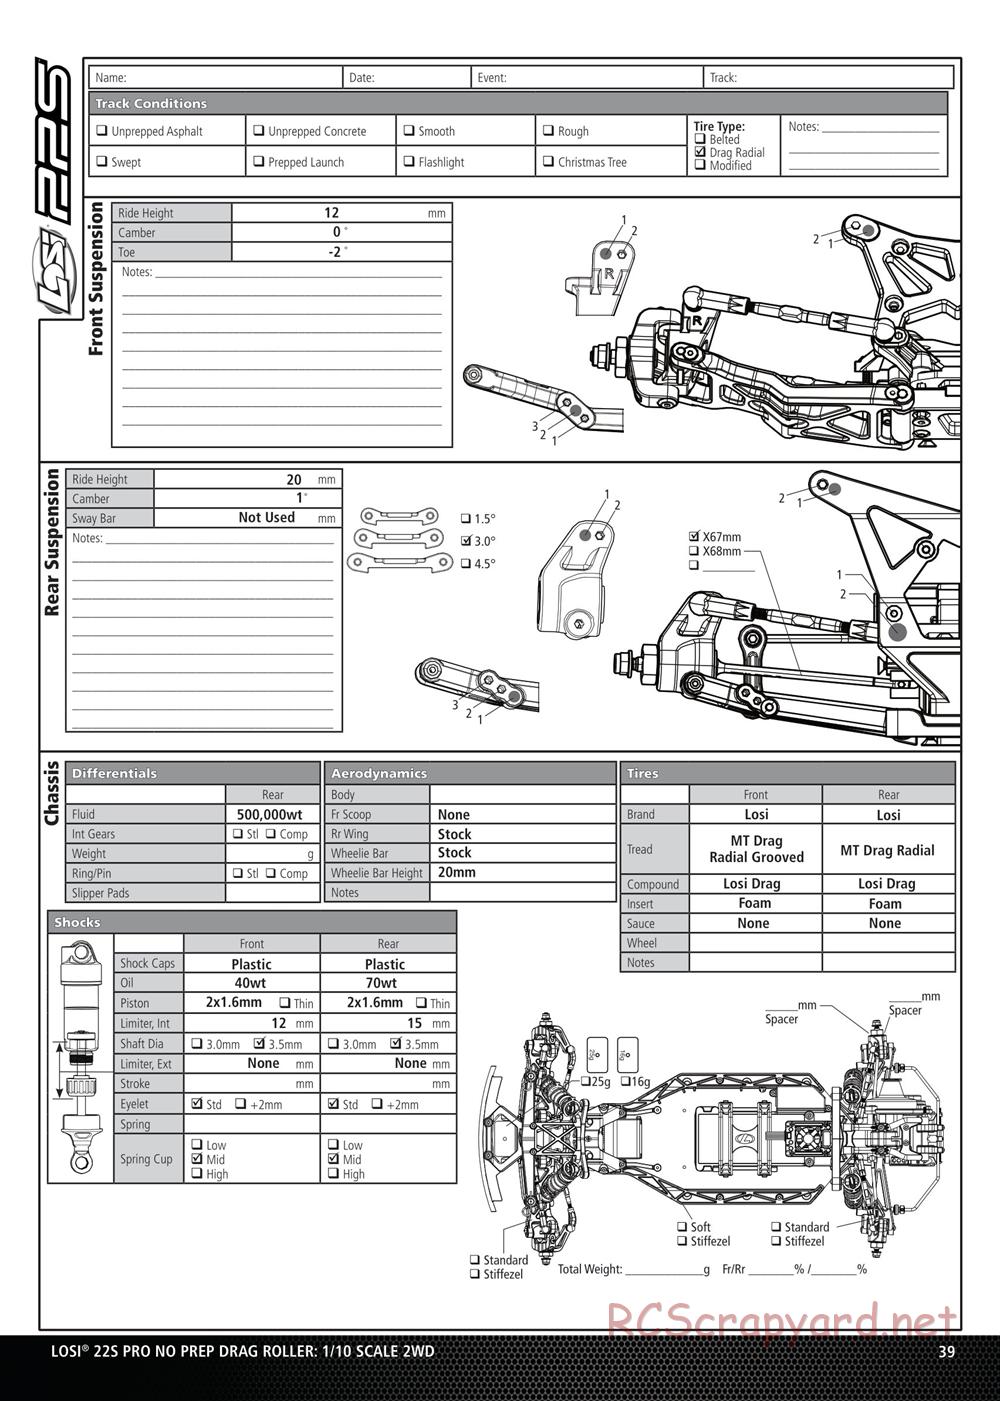 Team Losi - No Prep Drag Roller - Manual - Page 39